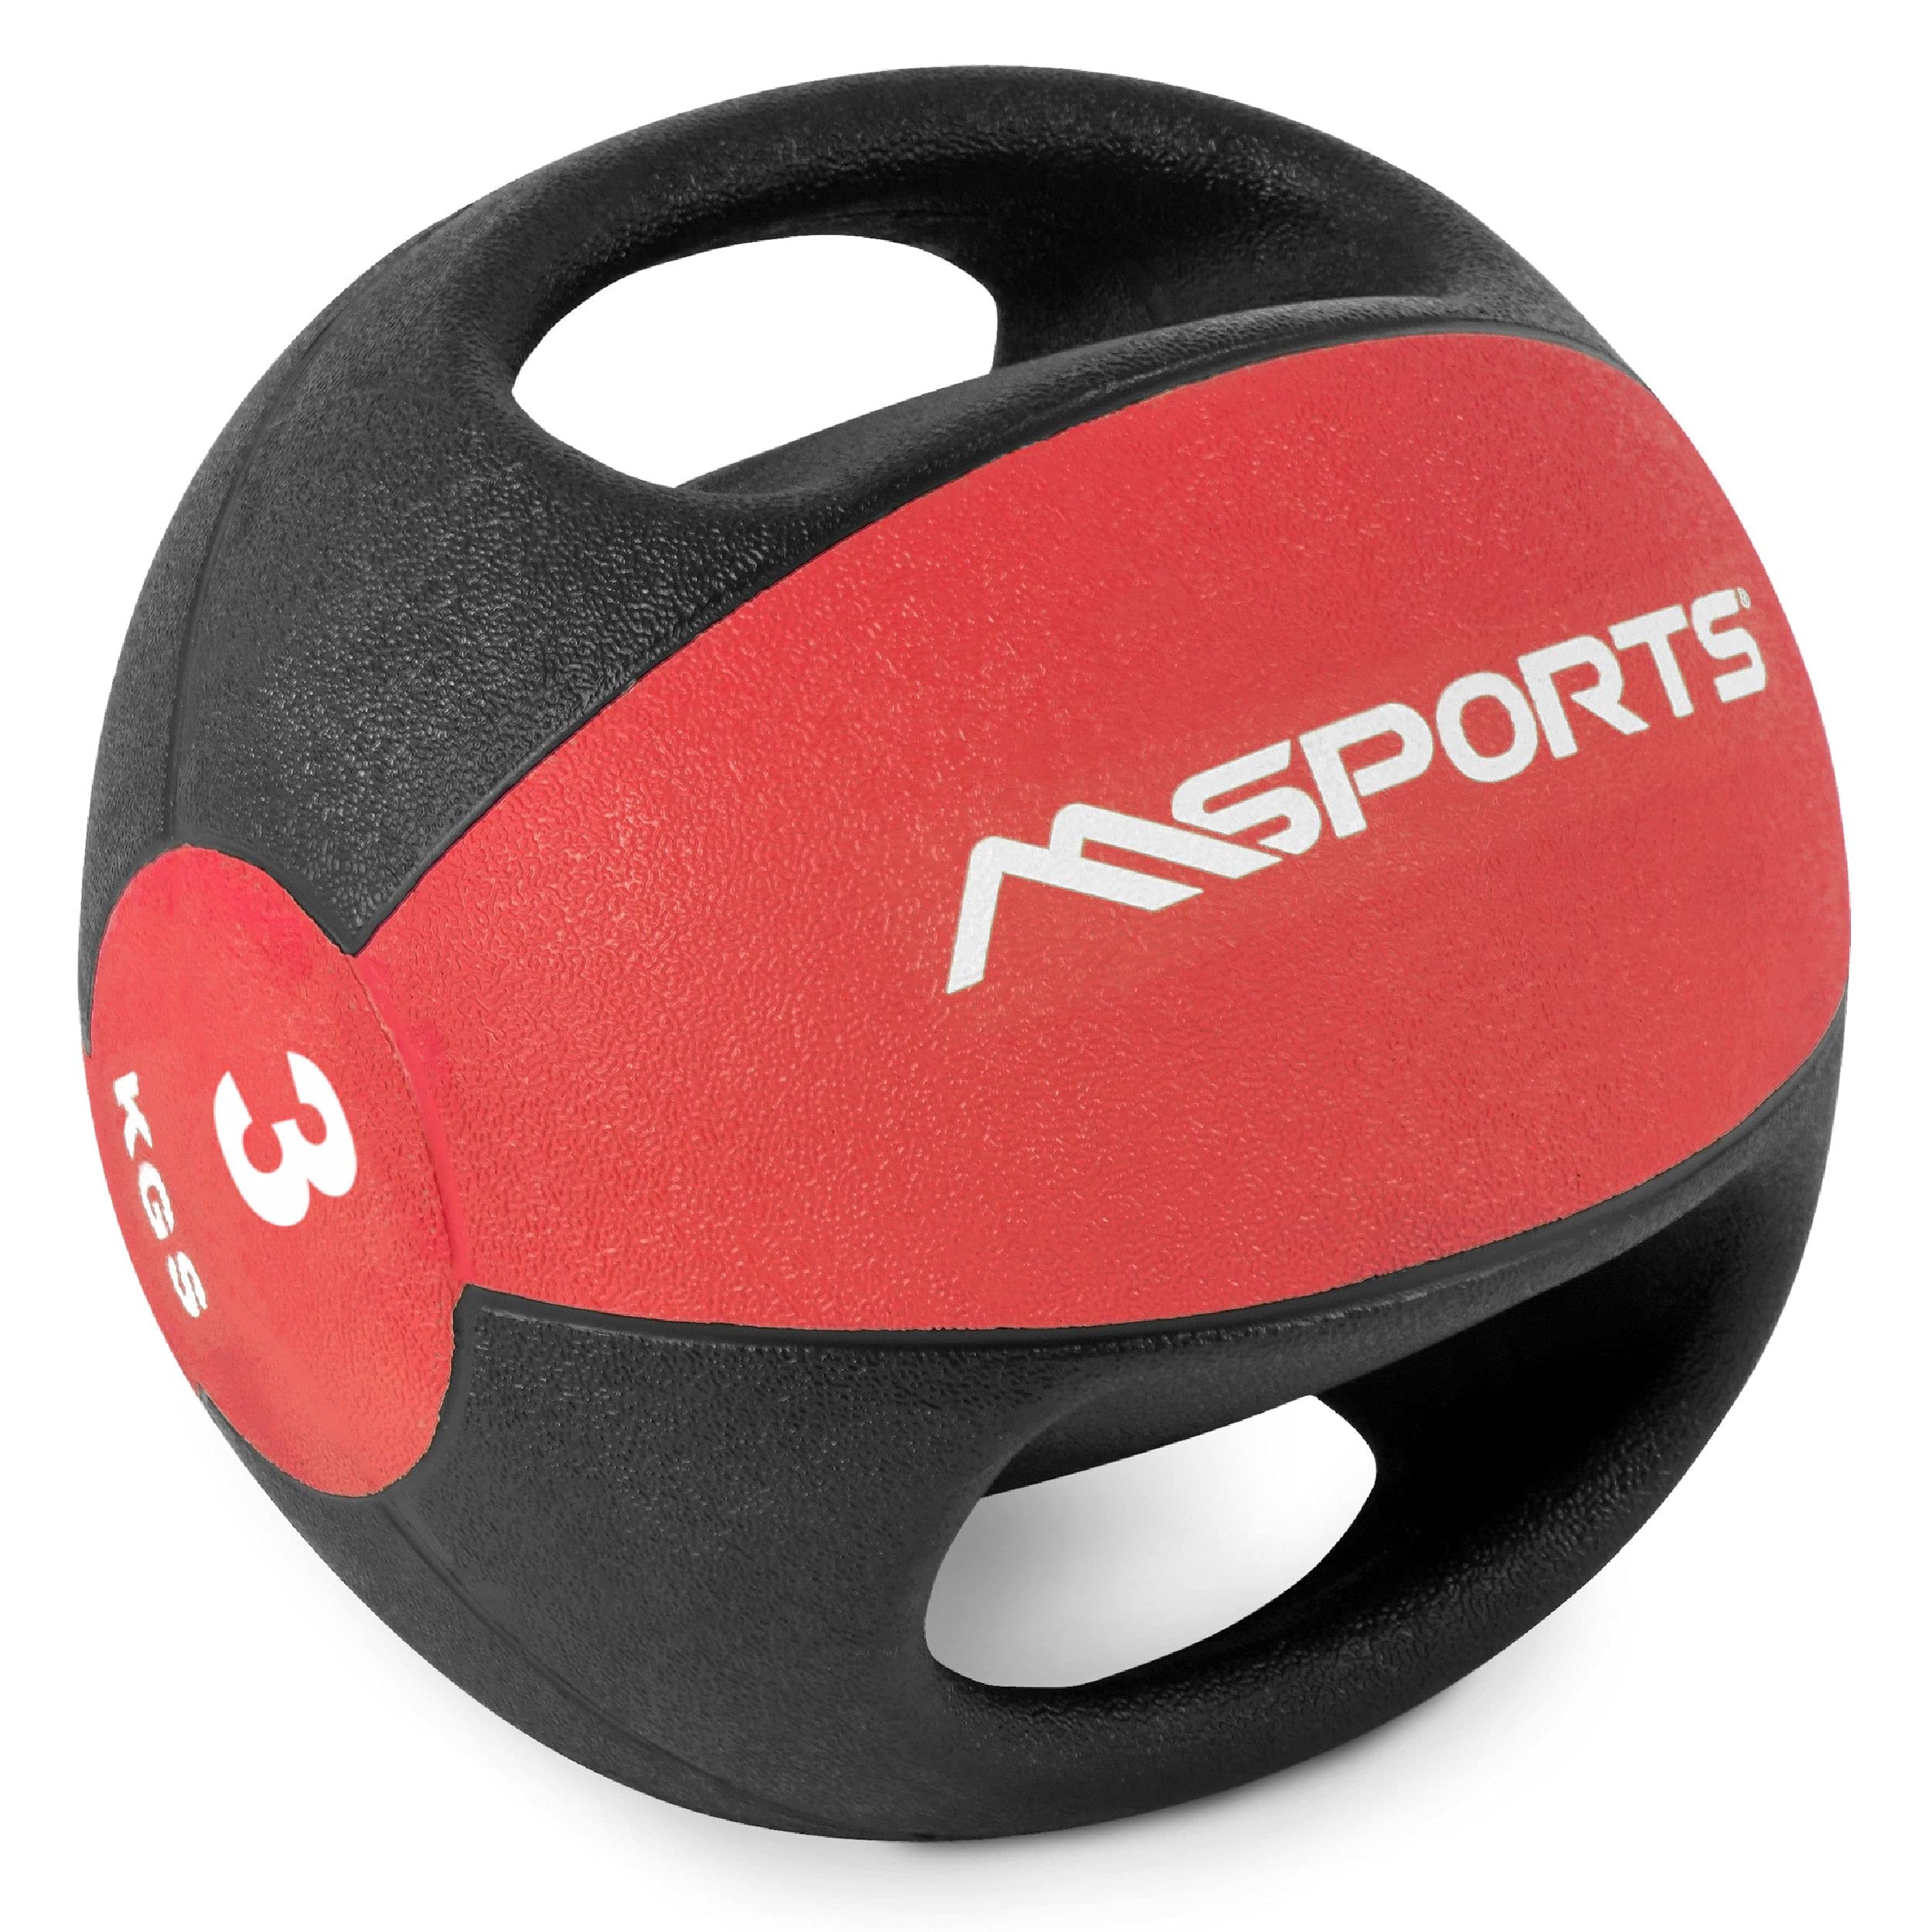 MSPORTS Medizinball Premium mit Griffe 1 – 10 kg – Professionelle Studio-Qualität Gymnastikbälle (3 kg - Rot)